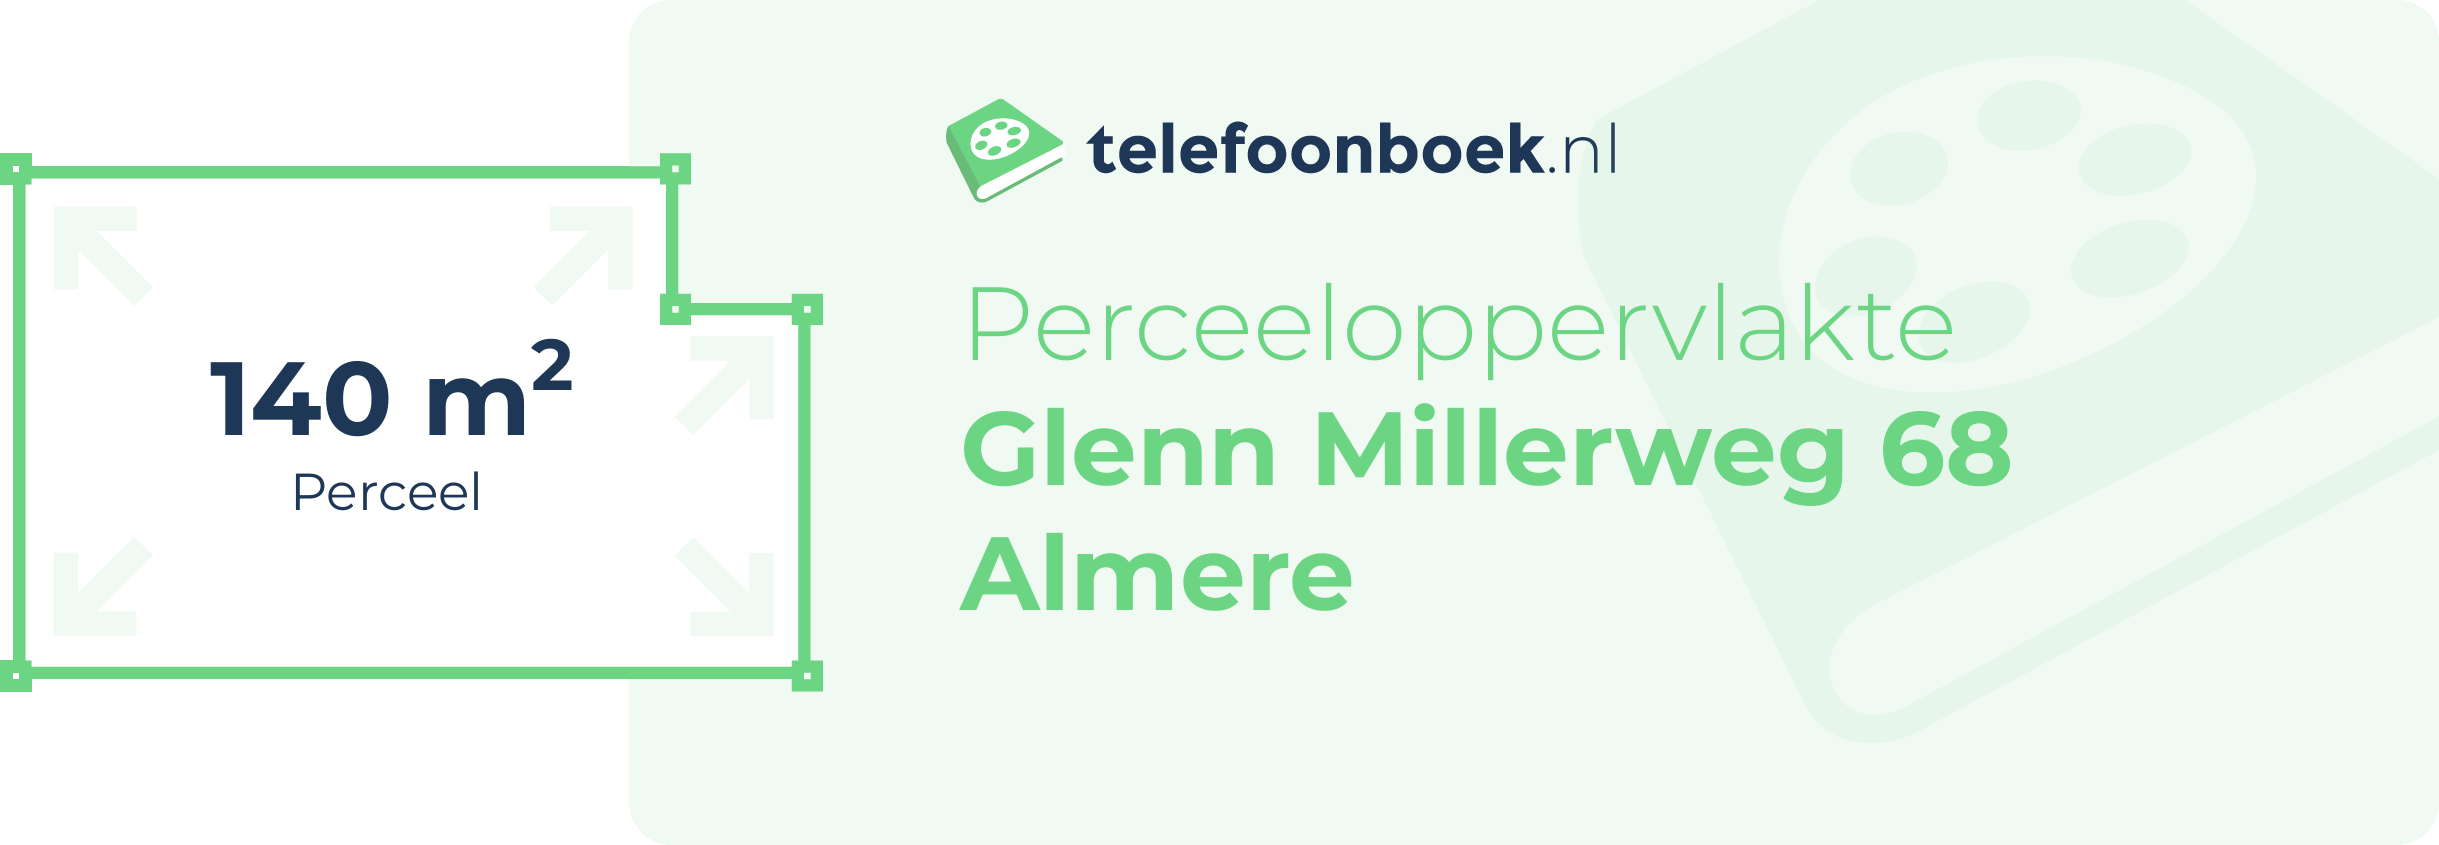 Perceeloppervlakte Glenn Millerweg 68 Almere